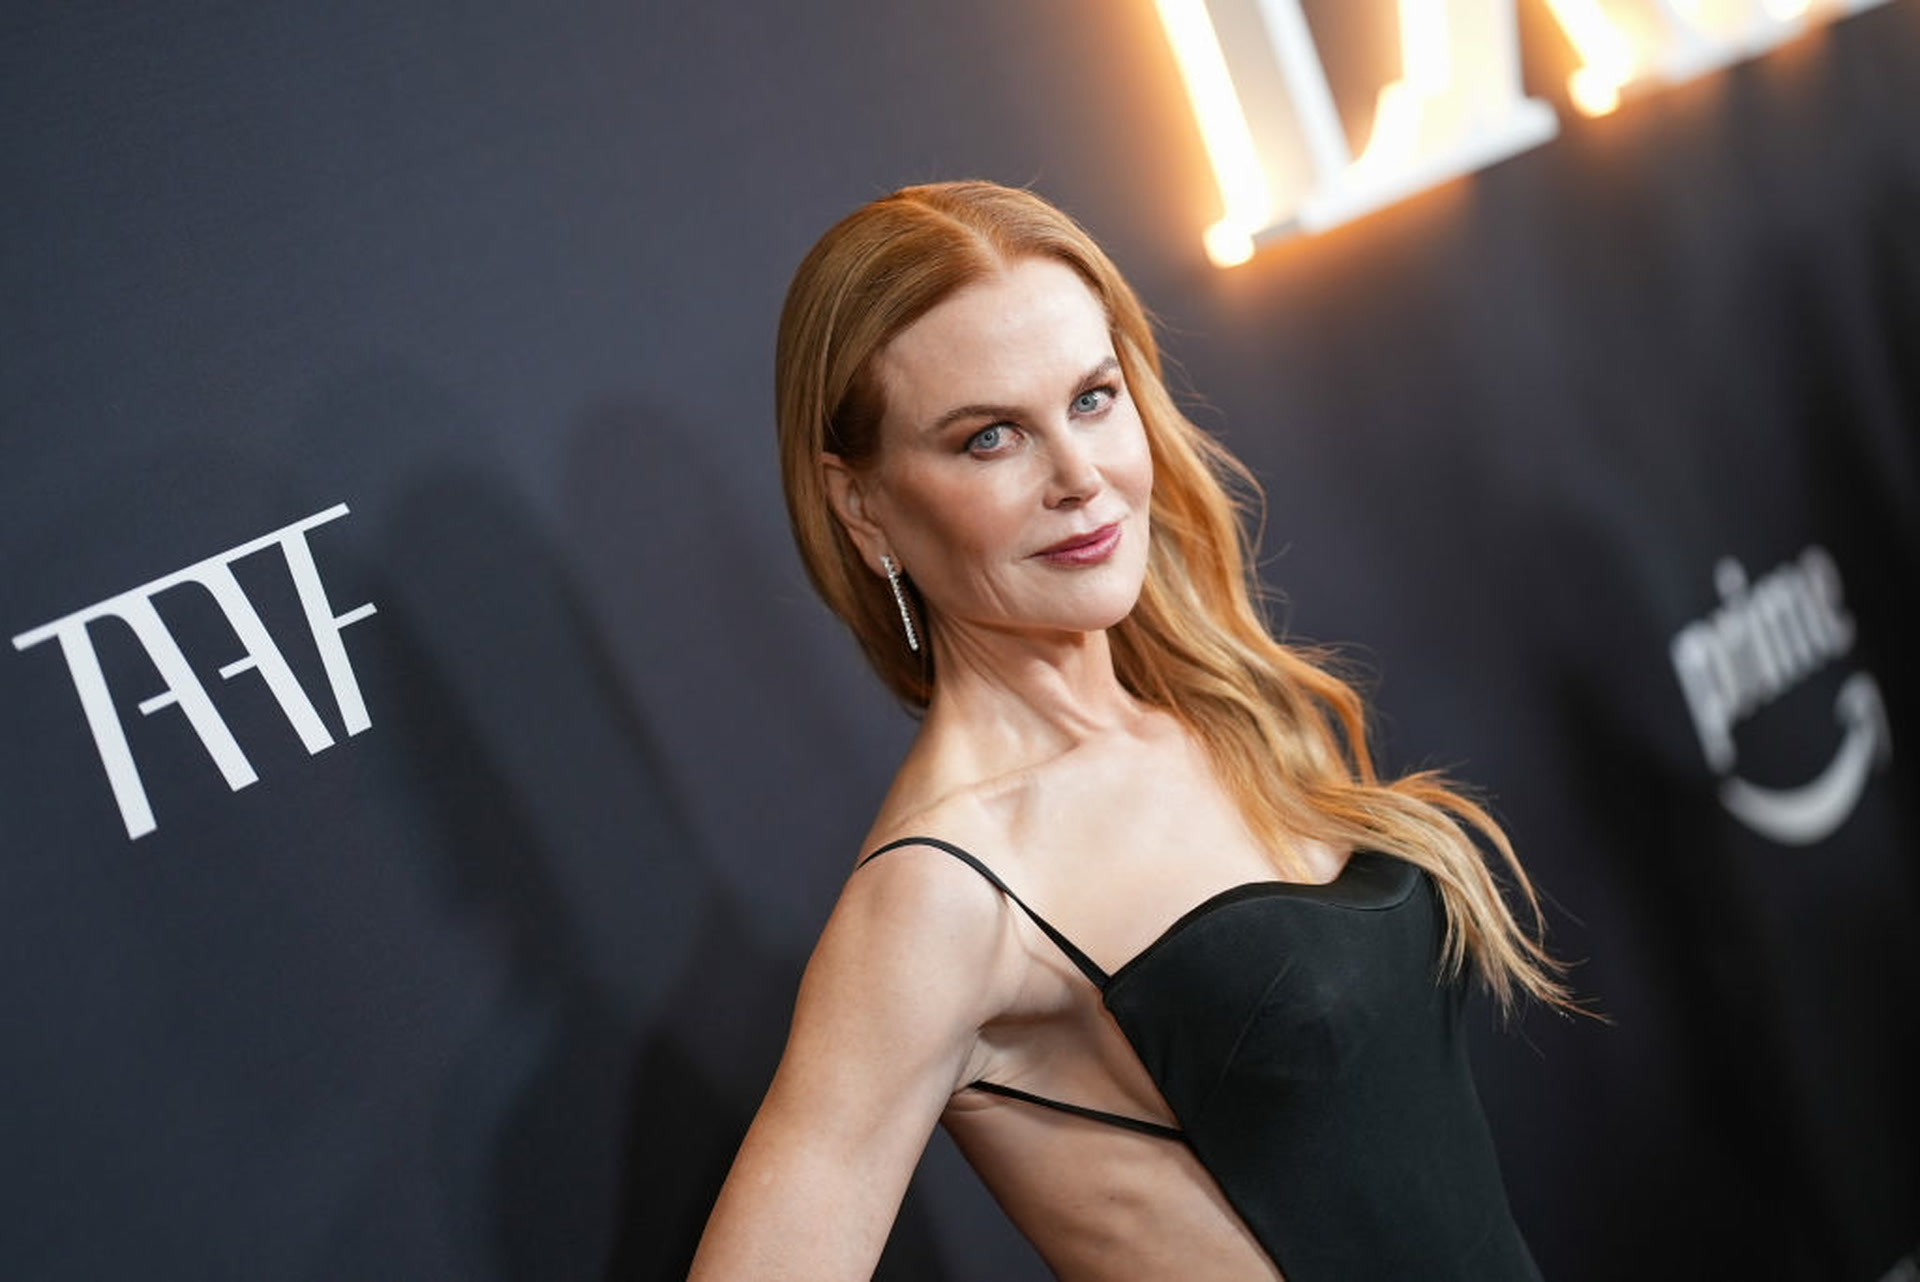 Cette vidéo embarrassante de Nicole Kidman avouant à Jimmy Fallon qu’il a raté sa chance de sortir avec elle